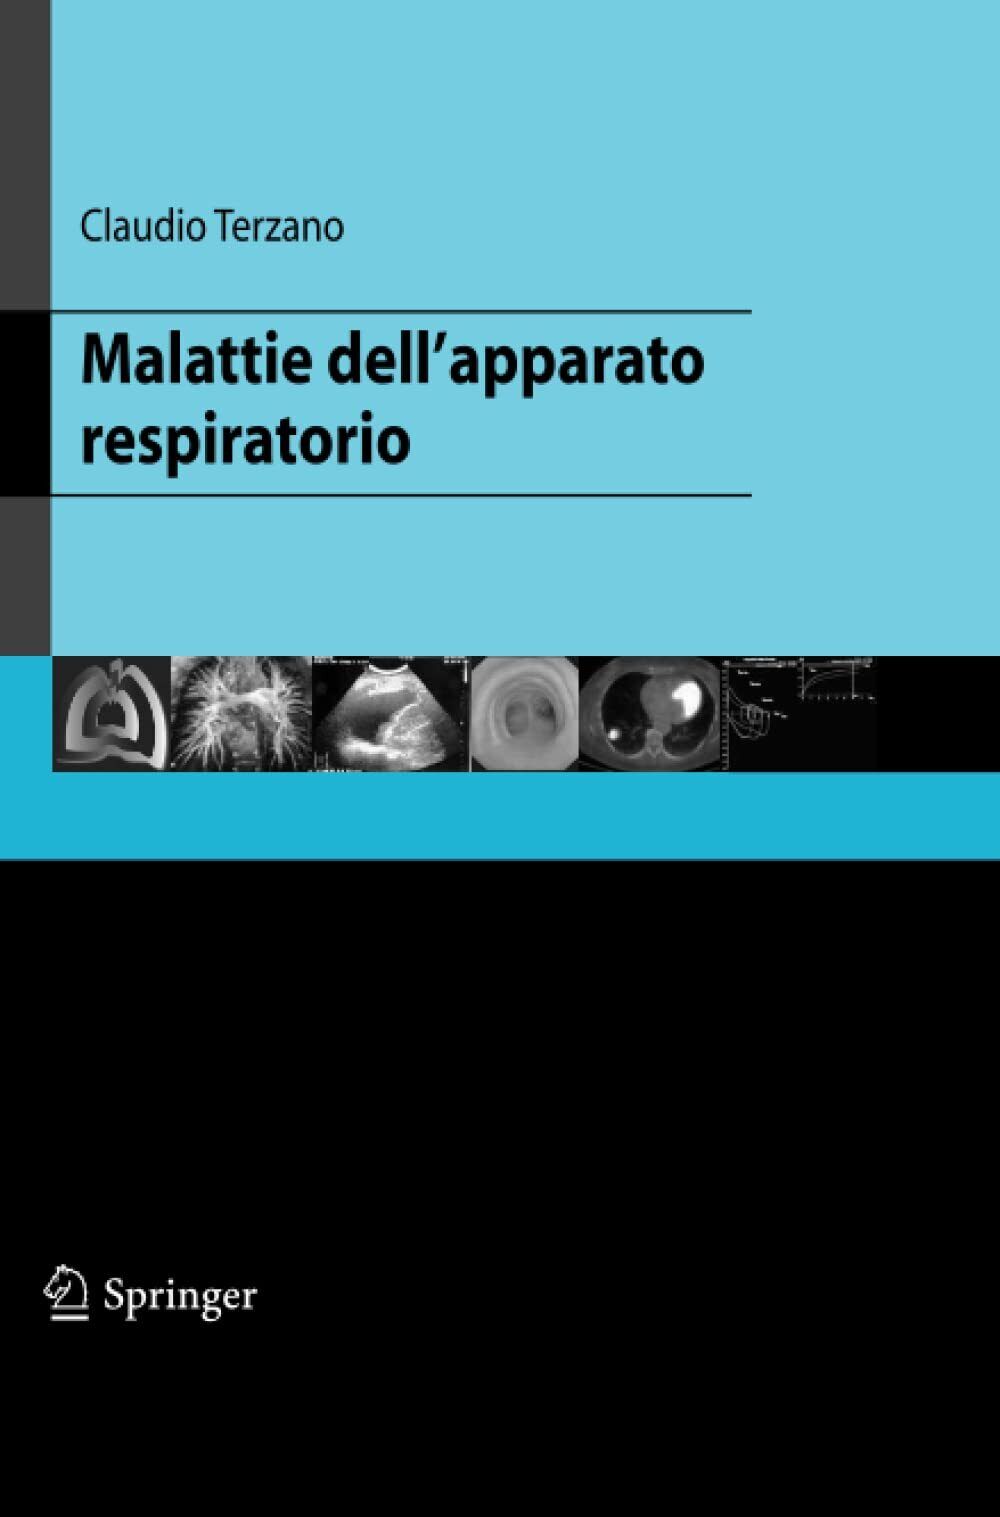 Malattie dell'apparato respiratorio - Claudio Terzano - Springer, 2014